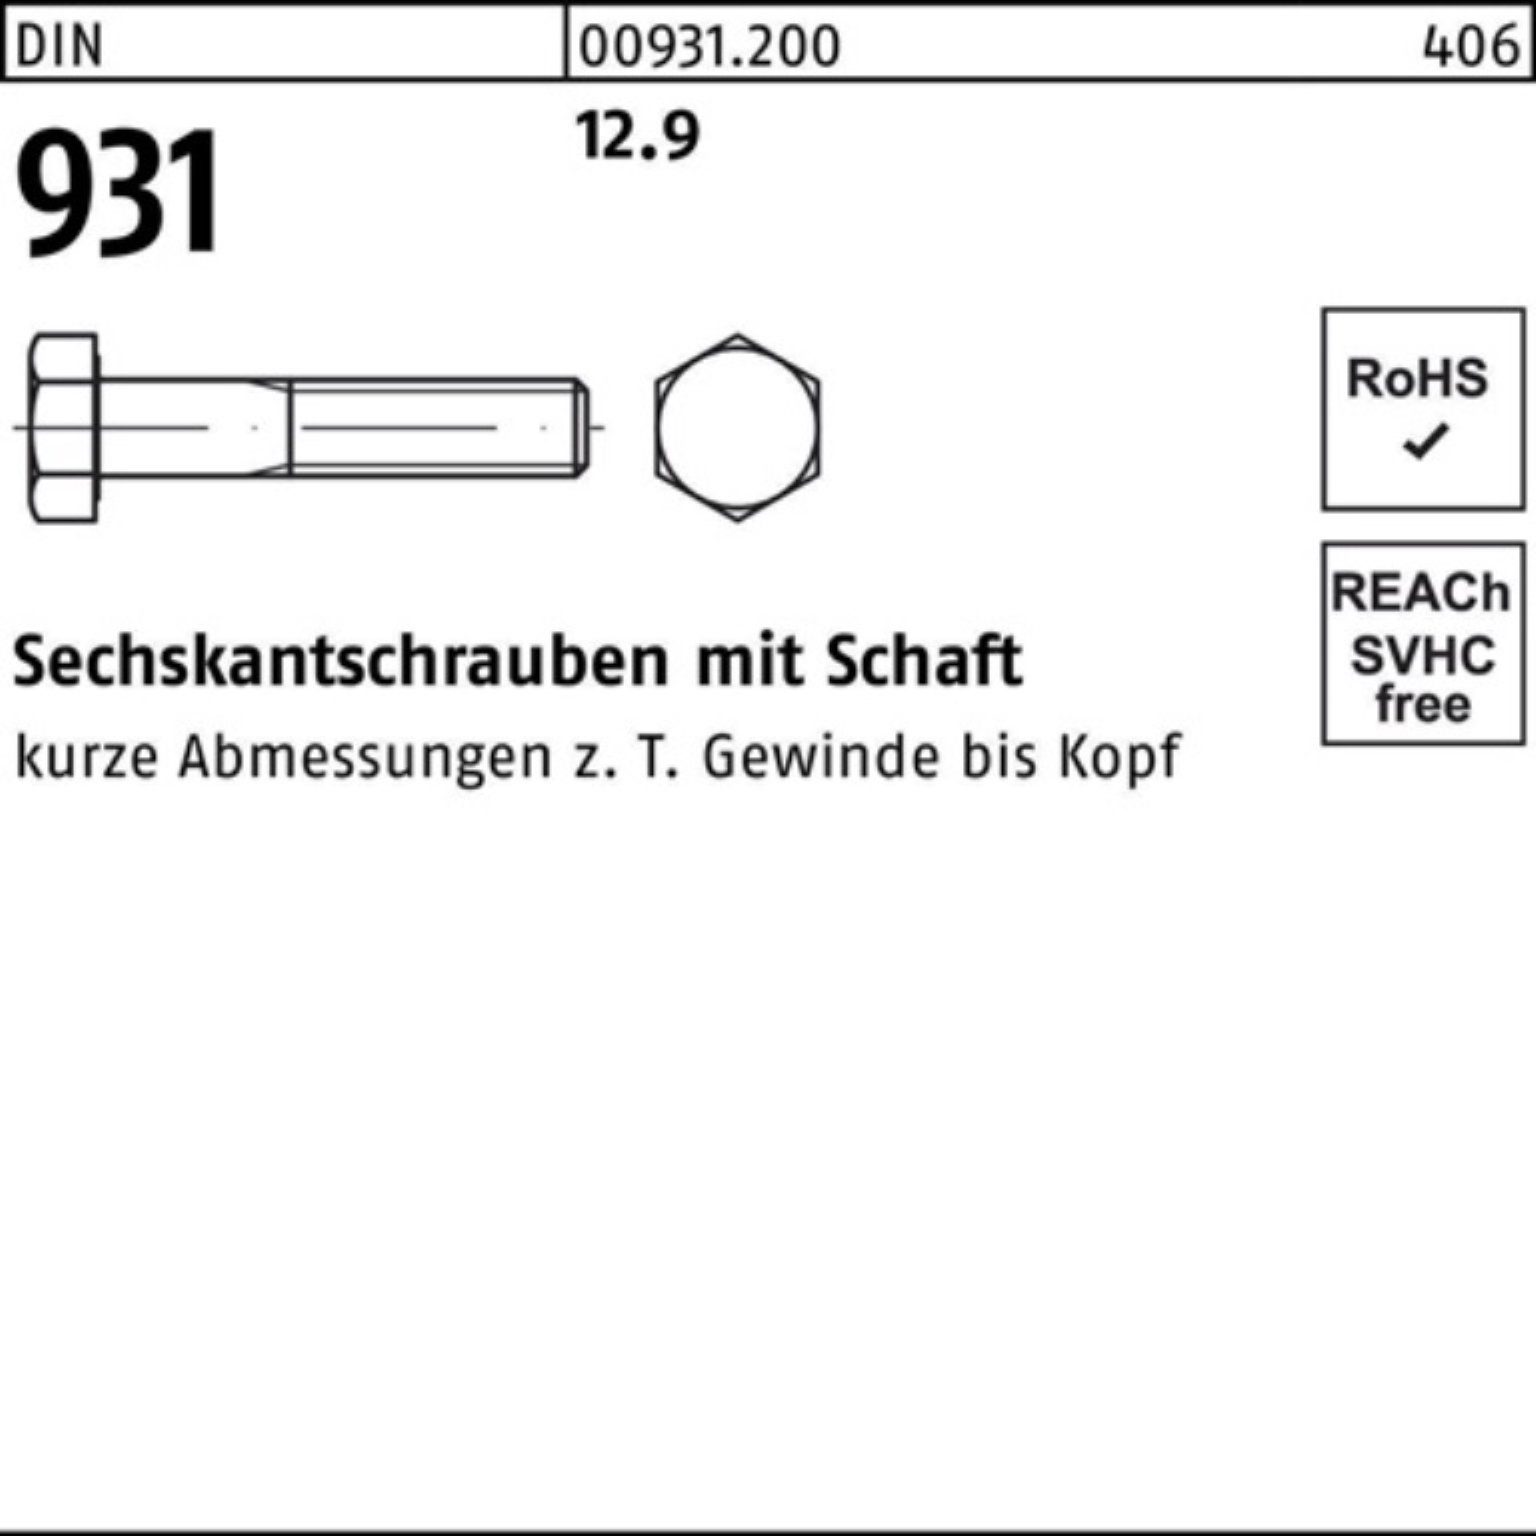 Reyher Sechskantschraube 100er Pack Sechskantschraube Schaft 140 DIN Stück M20x 25 DI 931 12.9